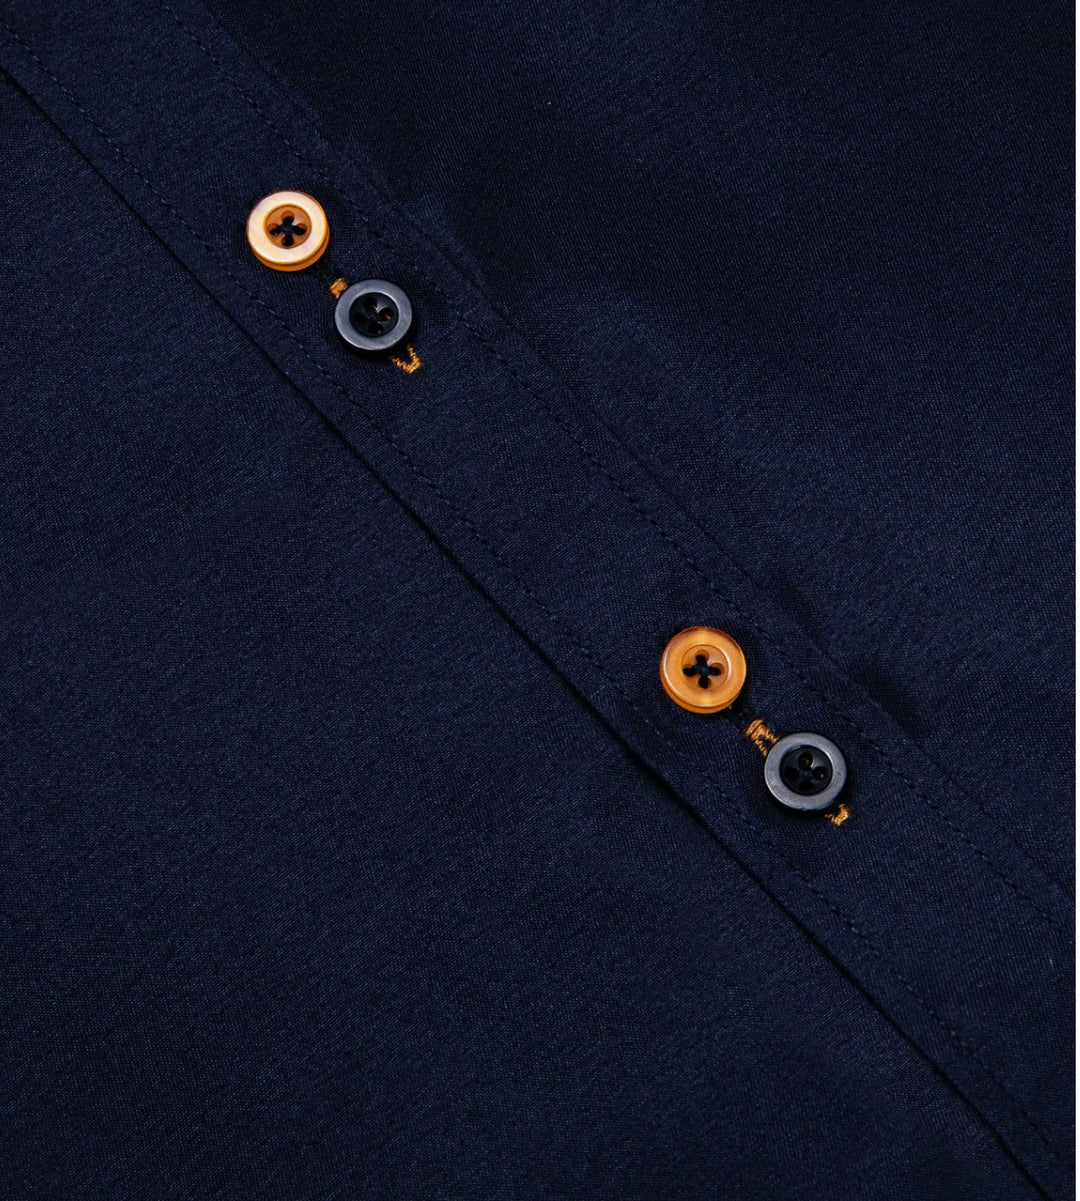 Simon Von Deep Blue Men's Shirt with contrast colored buttons unique cuffs design - CY - 2202 - SimonVon Shop